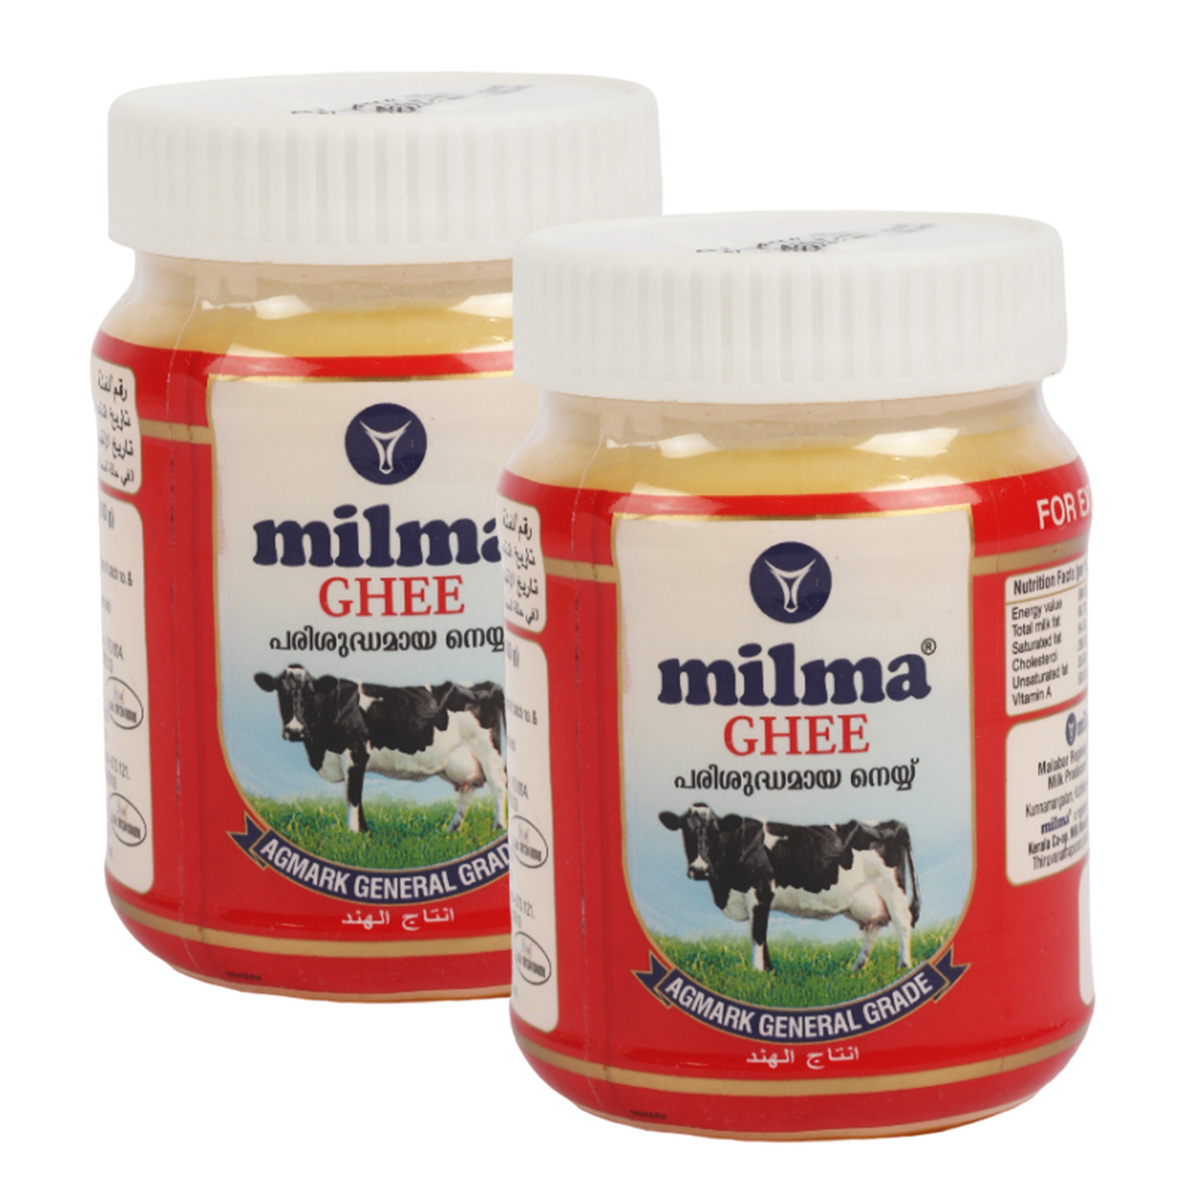 Milma Ghee Value Pack 2 x 200 ml